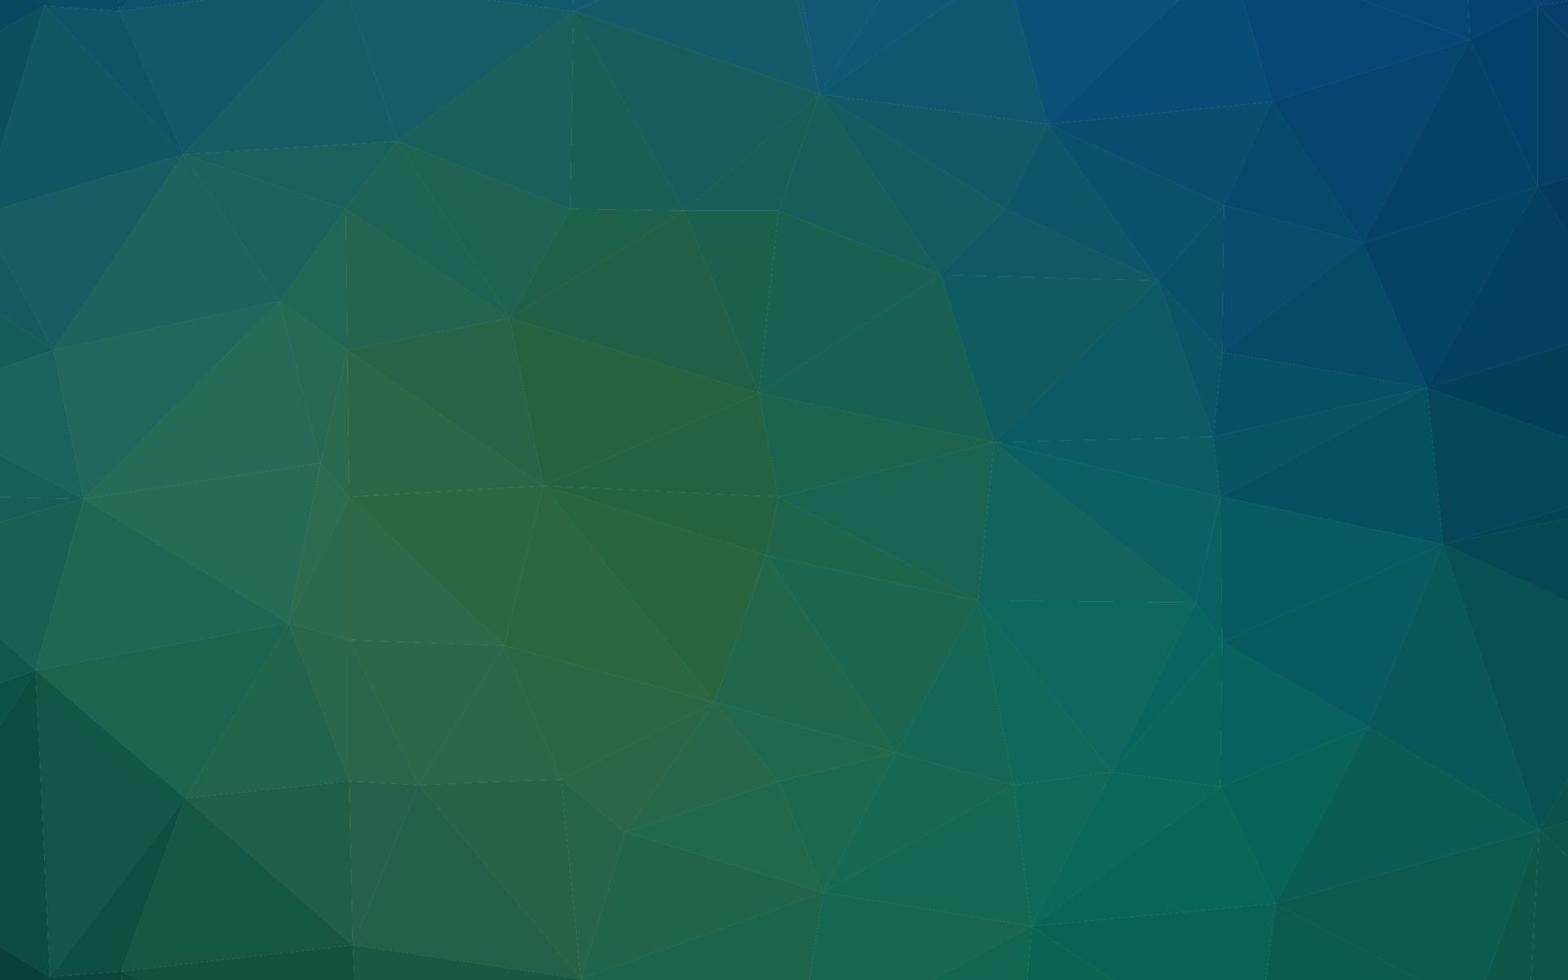 padrão poligonal de vetor azul e verde escuro.